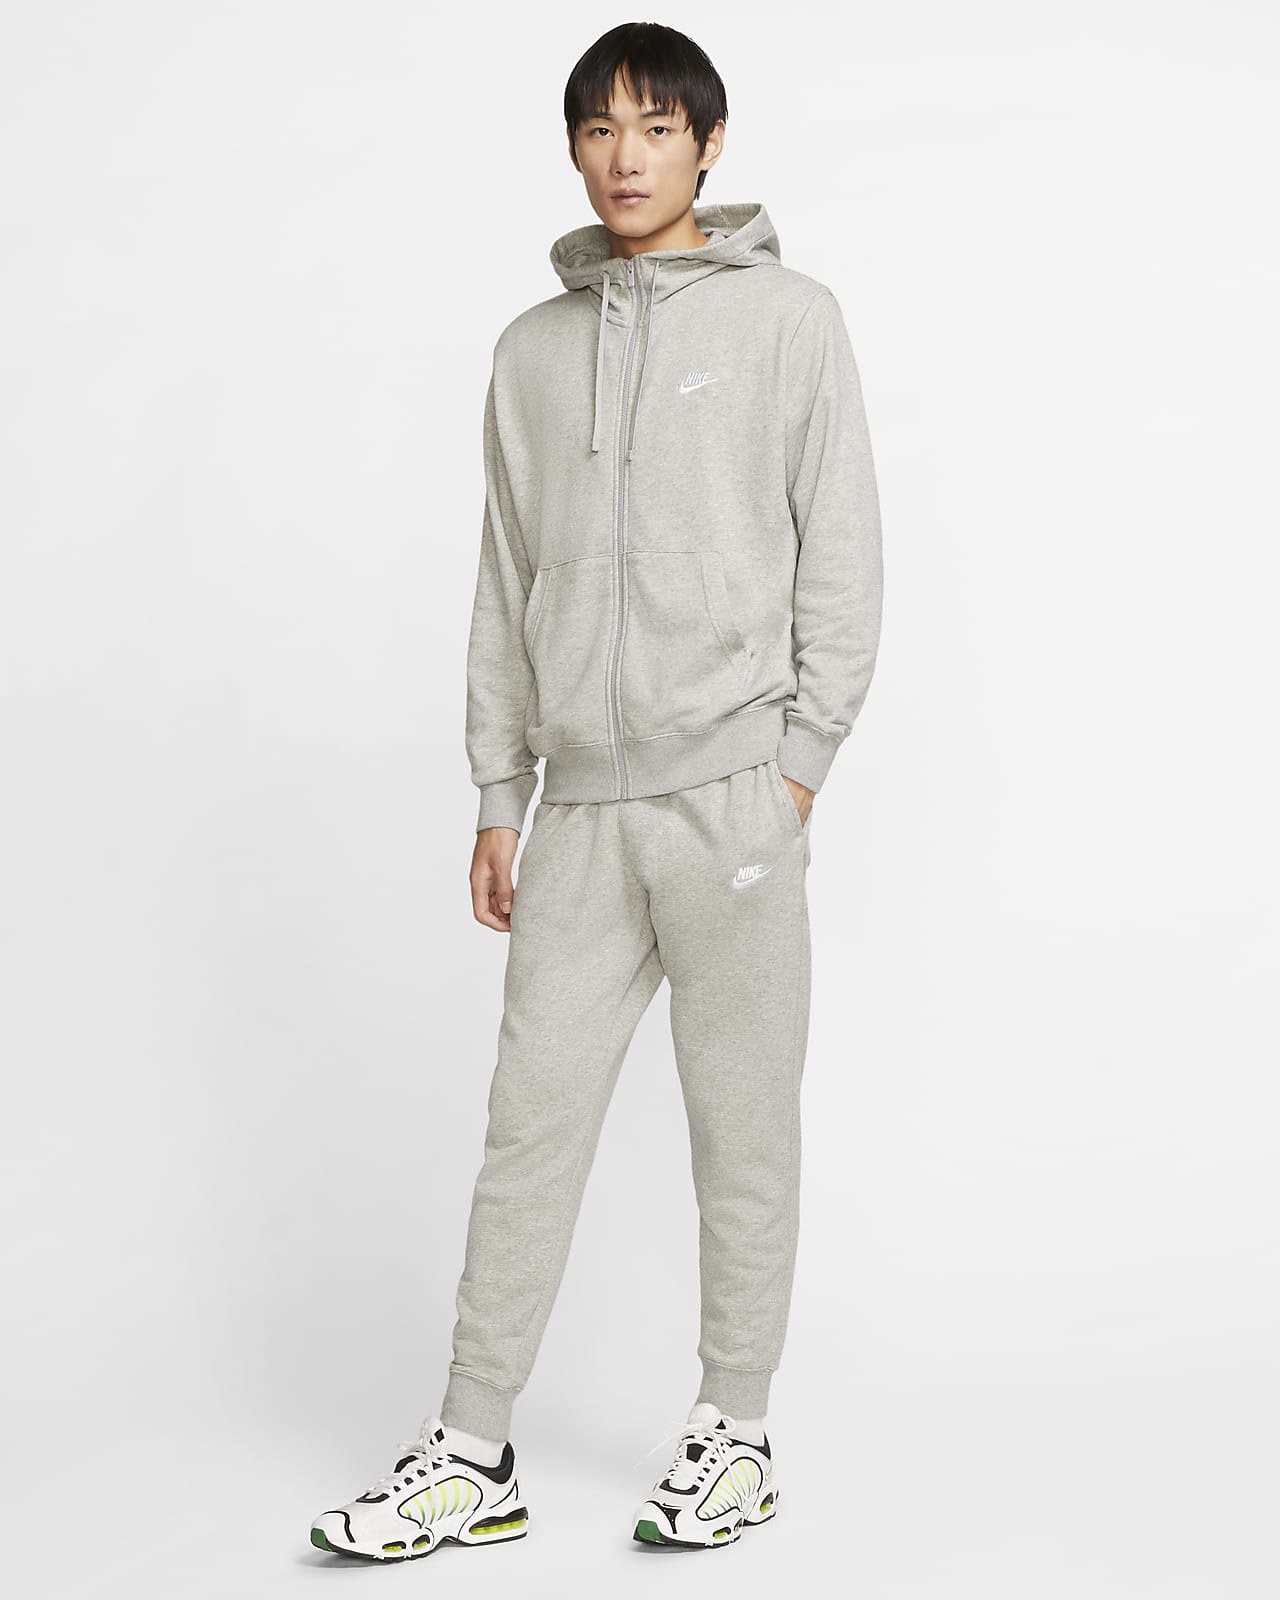 grey nike sweatpants and sweatshirt